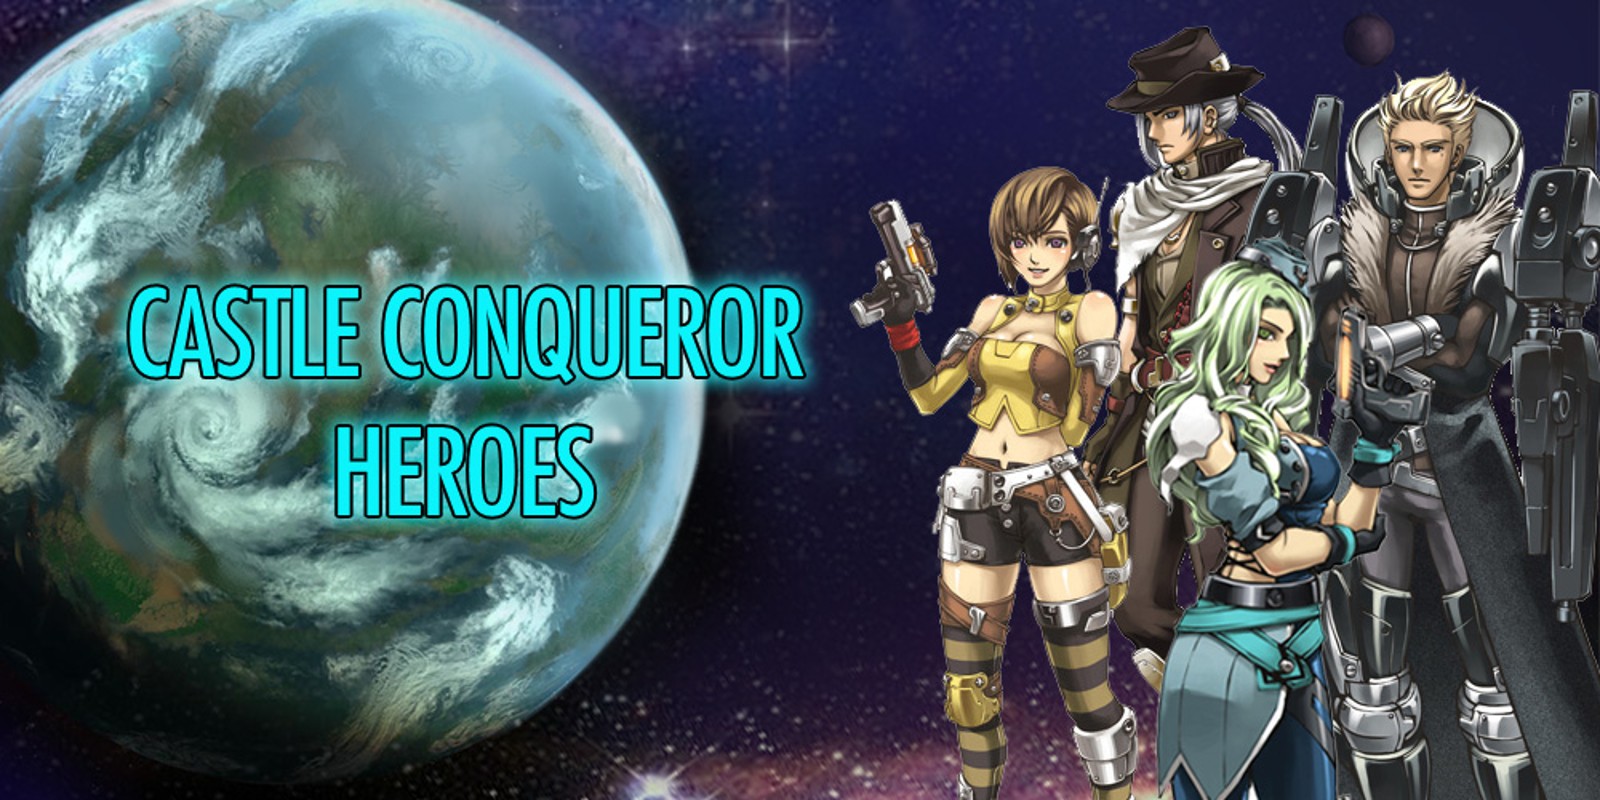 Castle Conqueror Heroes